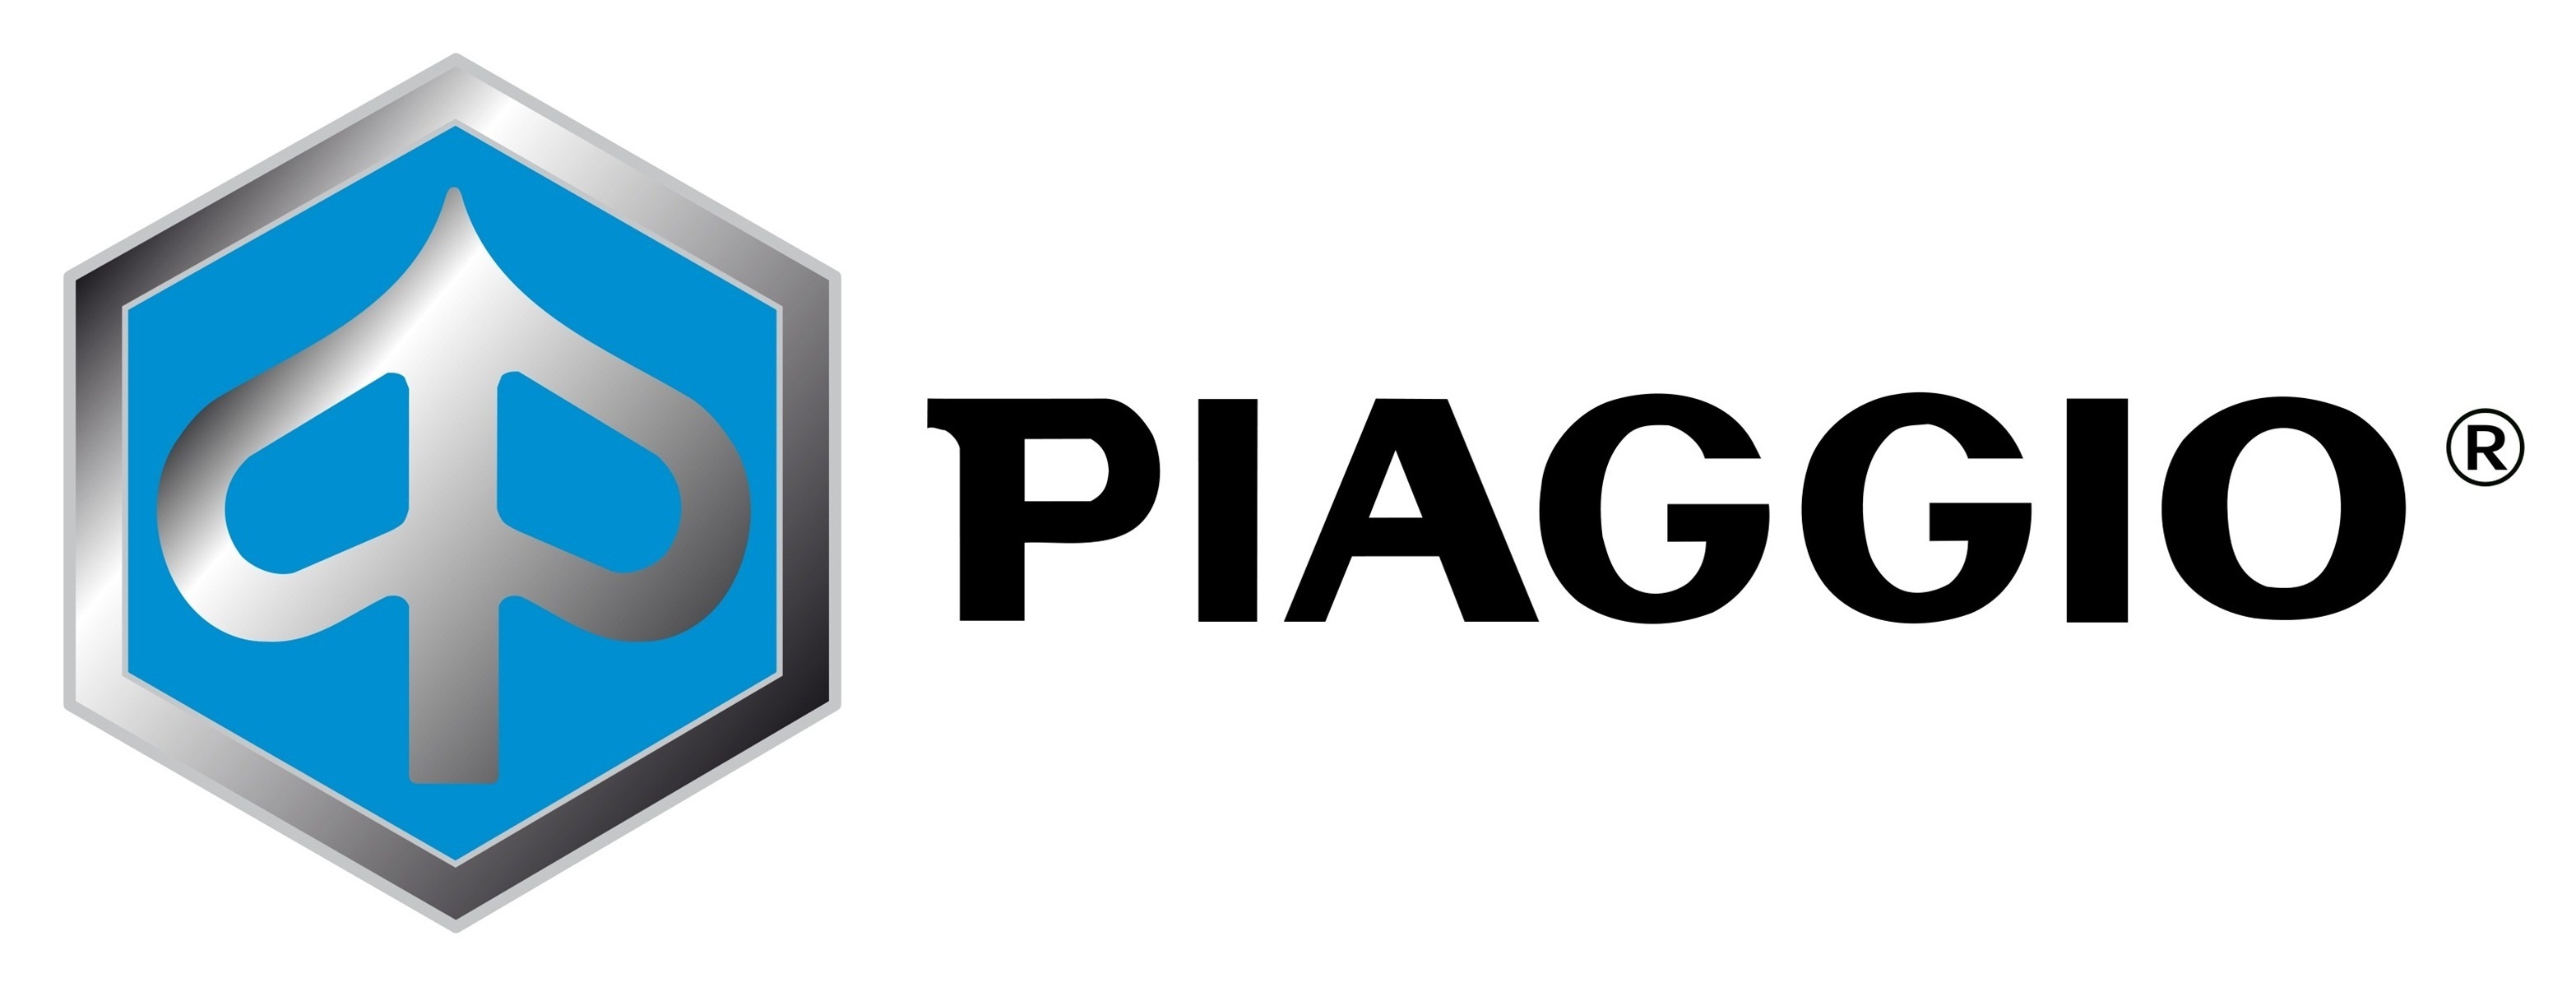 Piaggio Logo photo - 1